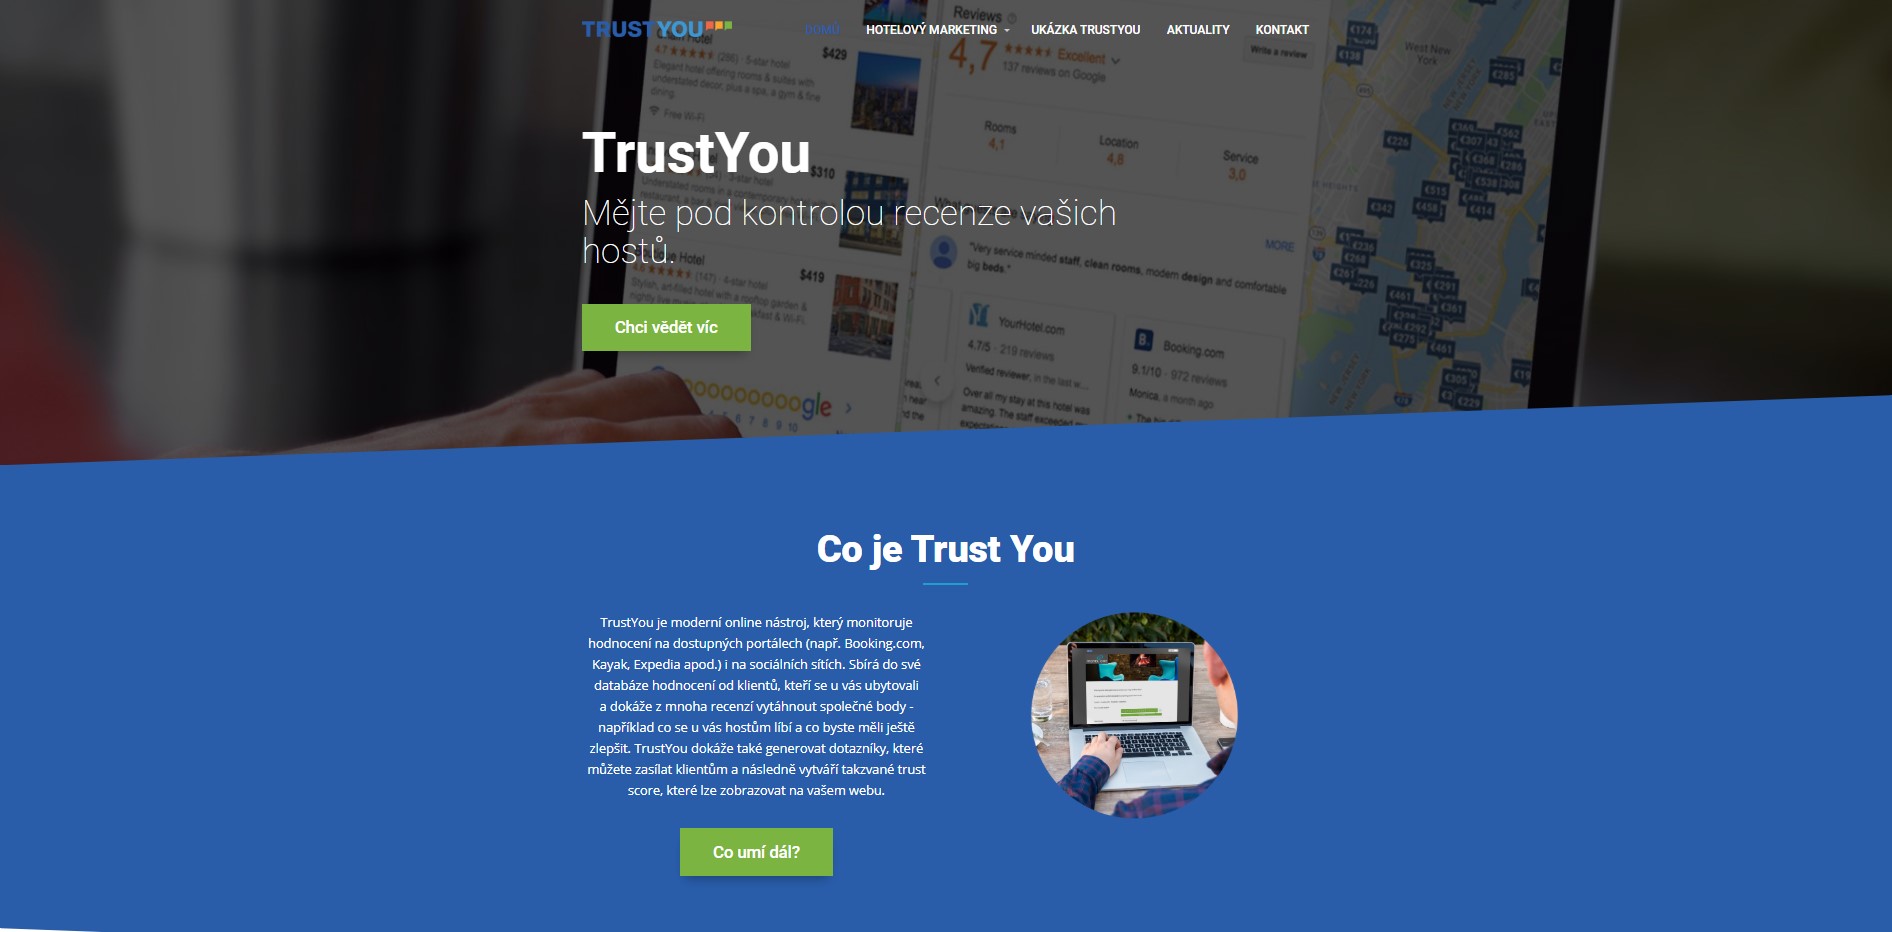 Tvorba internetových stránek pro Trustyou